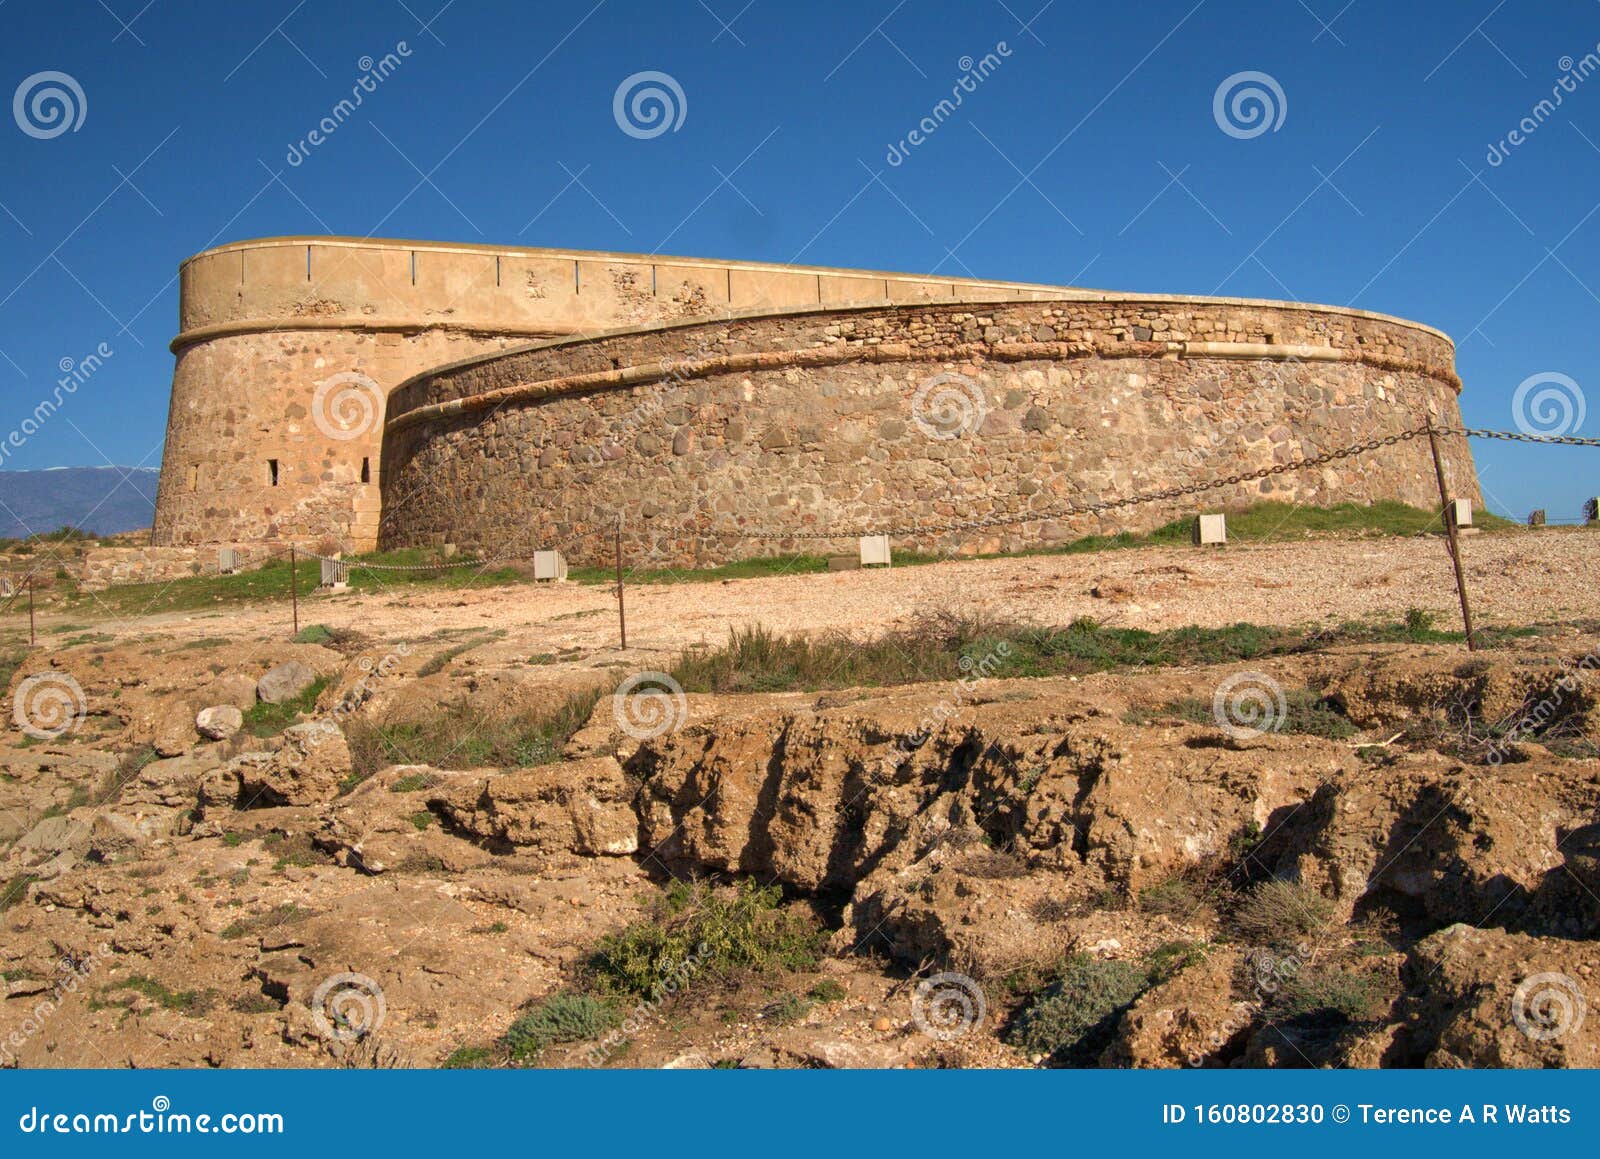 castillo de guardias viejas. castle or fort.